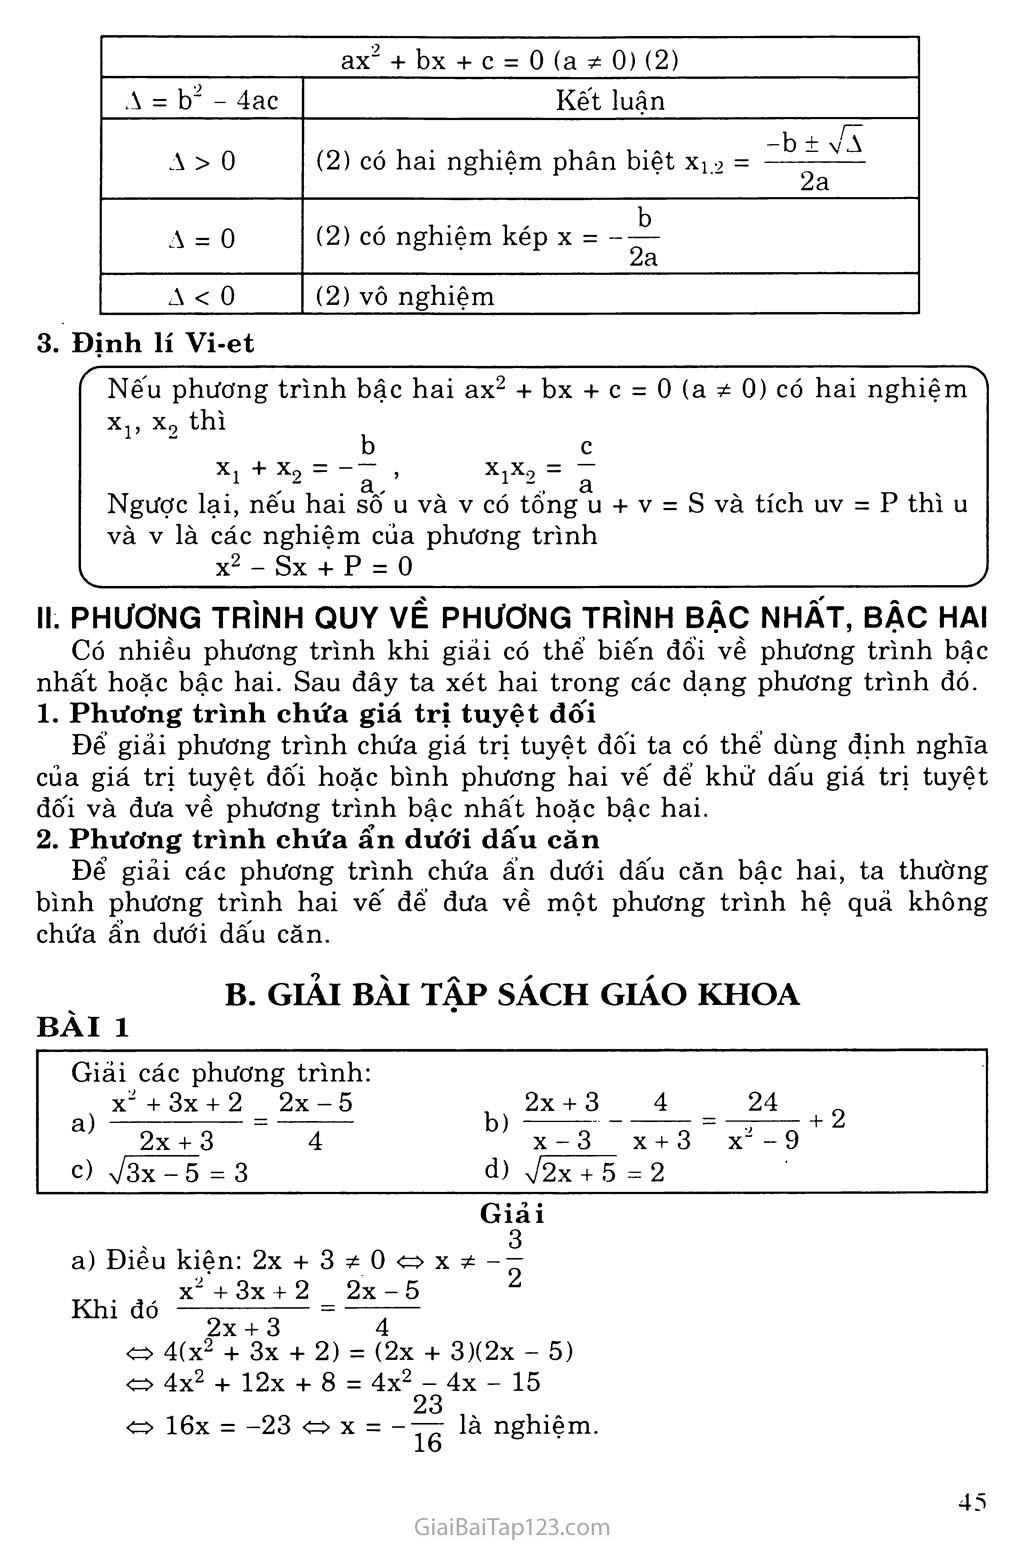 Bài 2. Phương trình qui về phương trình bậc nhất và bậc hai trang 2